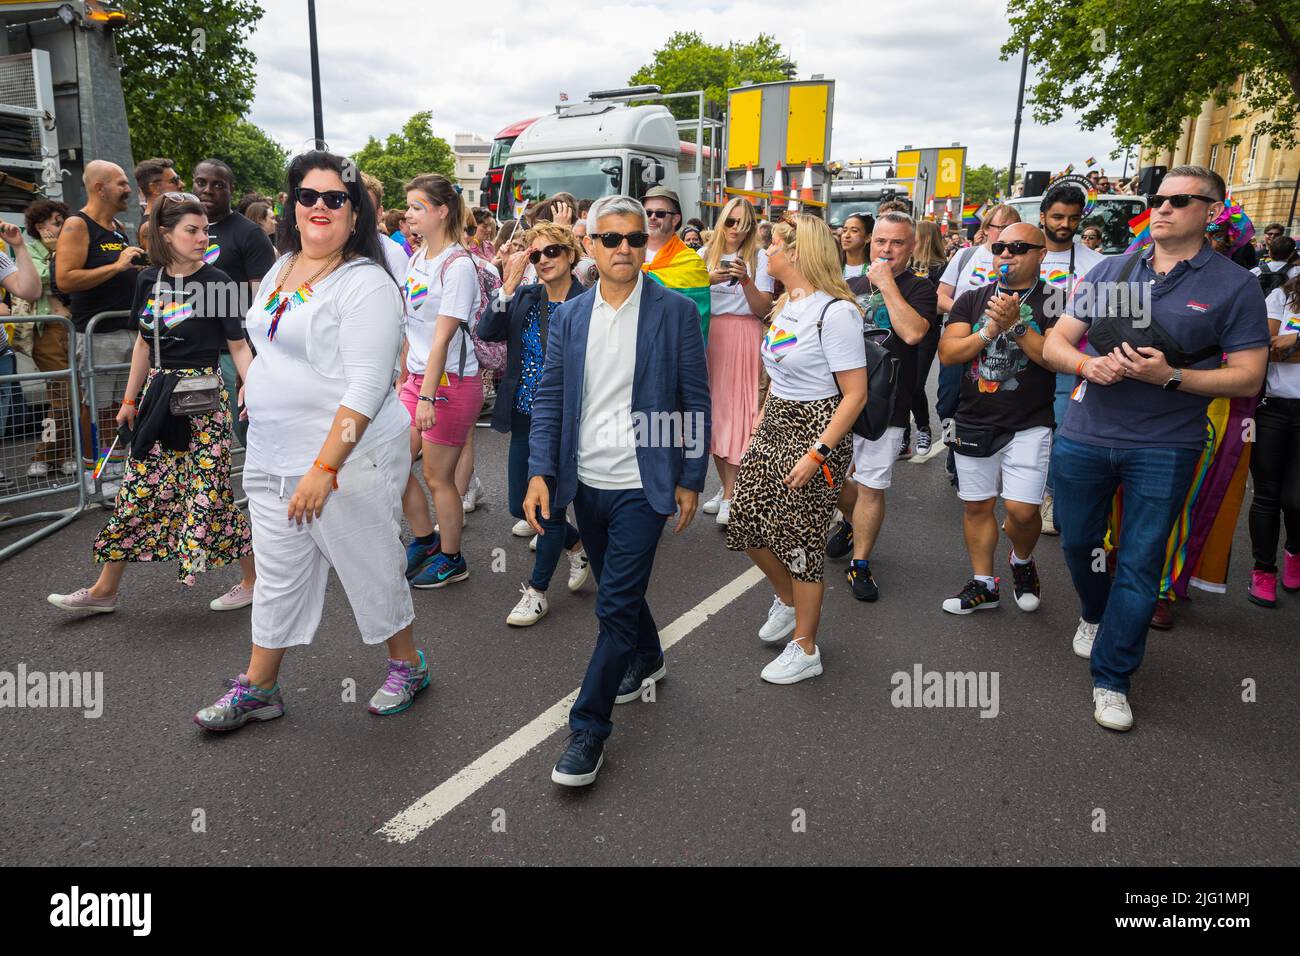 Amy Lamé y Sadiq Khan participan en Pride en Londres Foto de stock